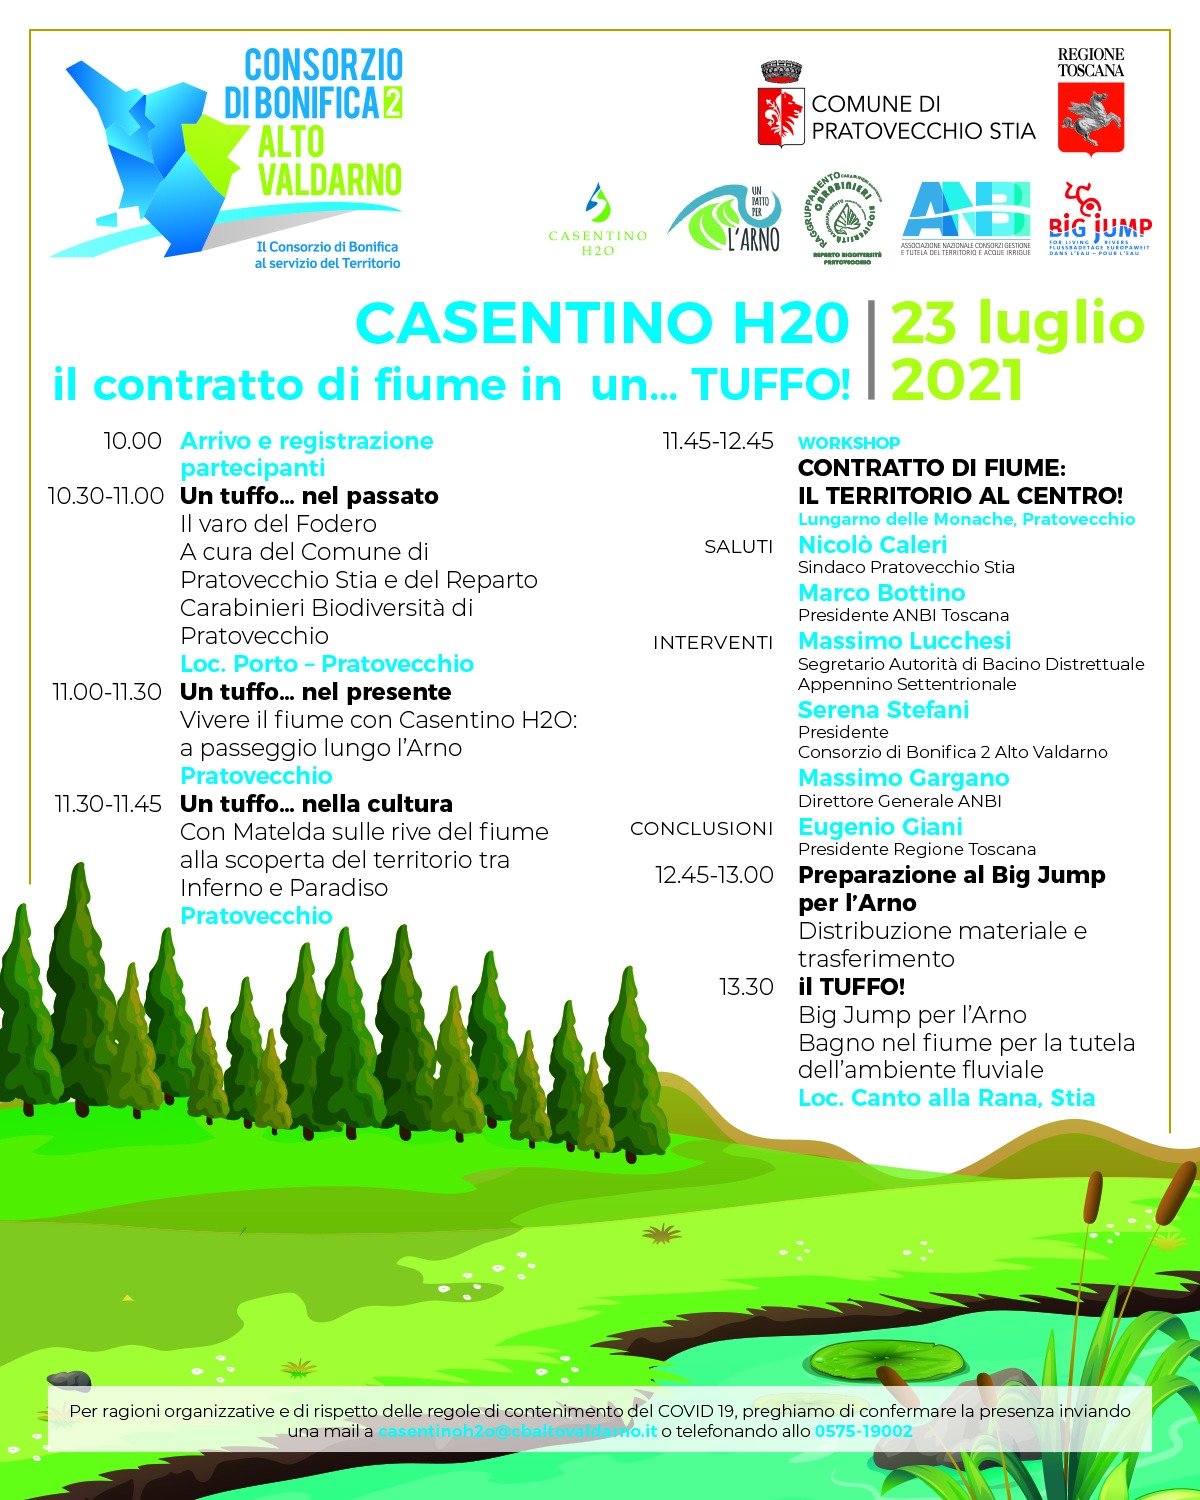 Casentino H20: tutto pronto per il Festival dell’Arno Casentinese